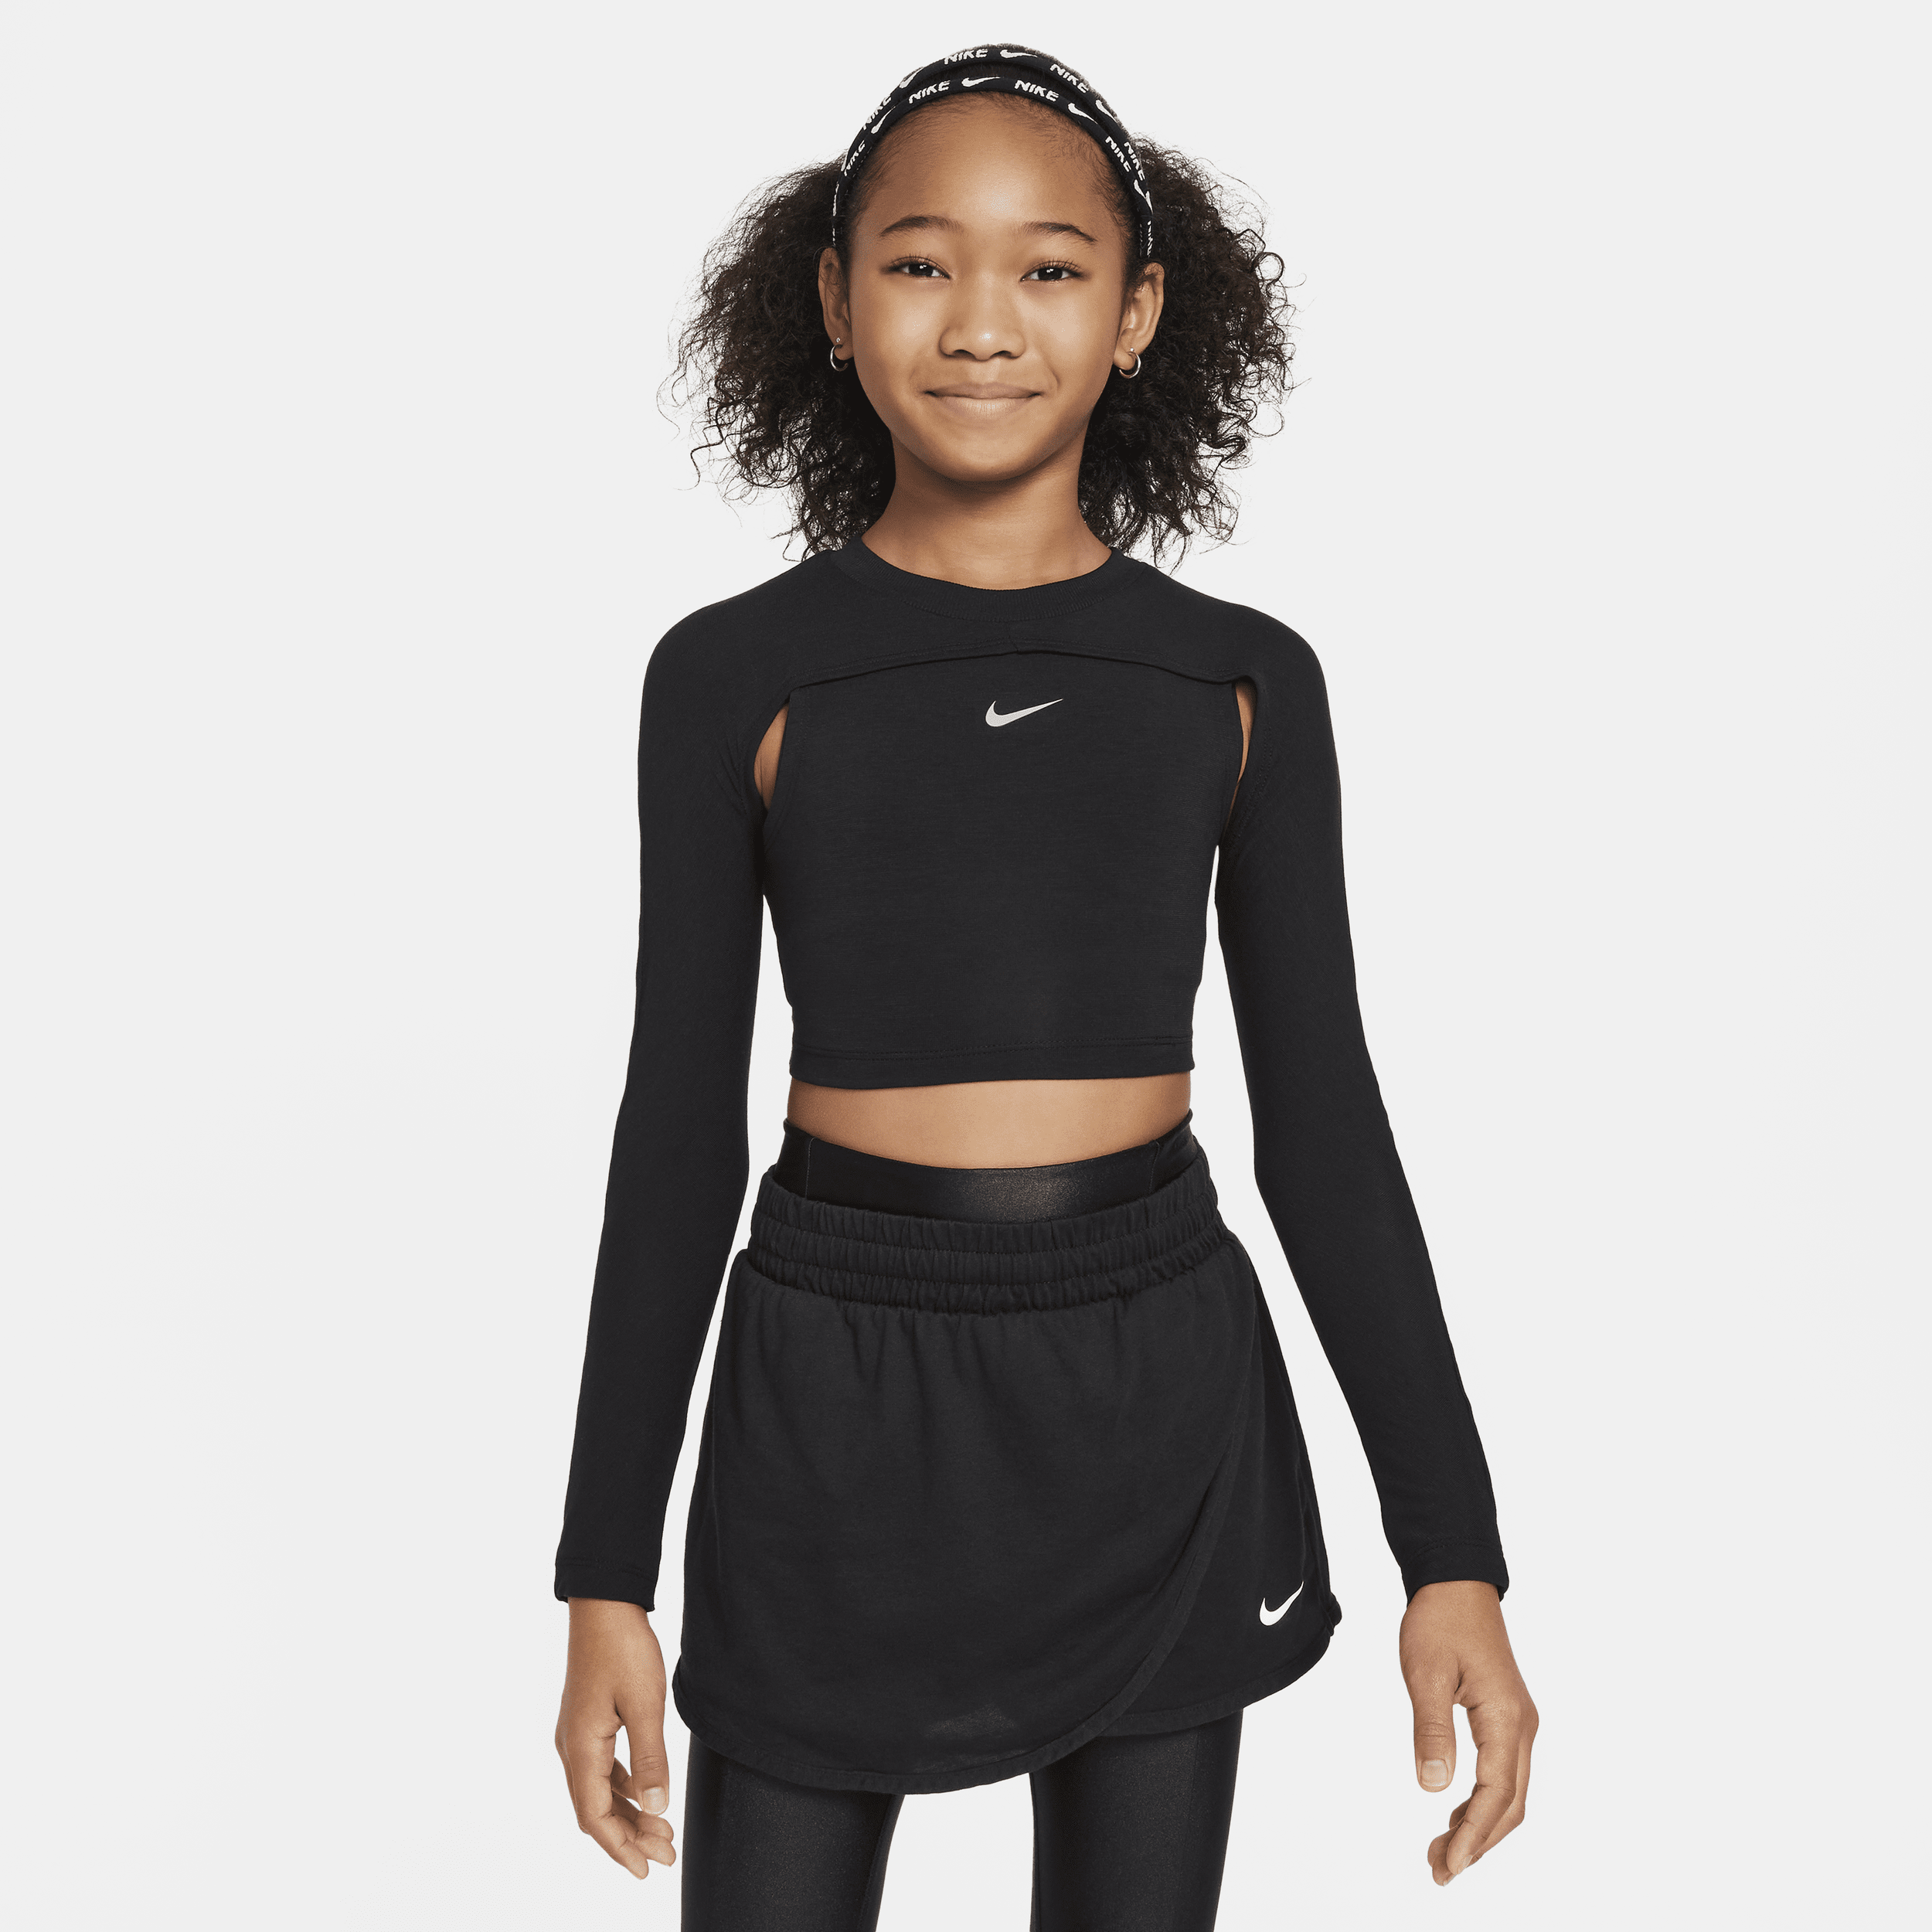 Nike Kids' Women's Girls' Dri-fit Long-sleeve Top In Black